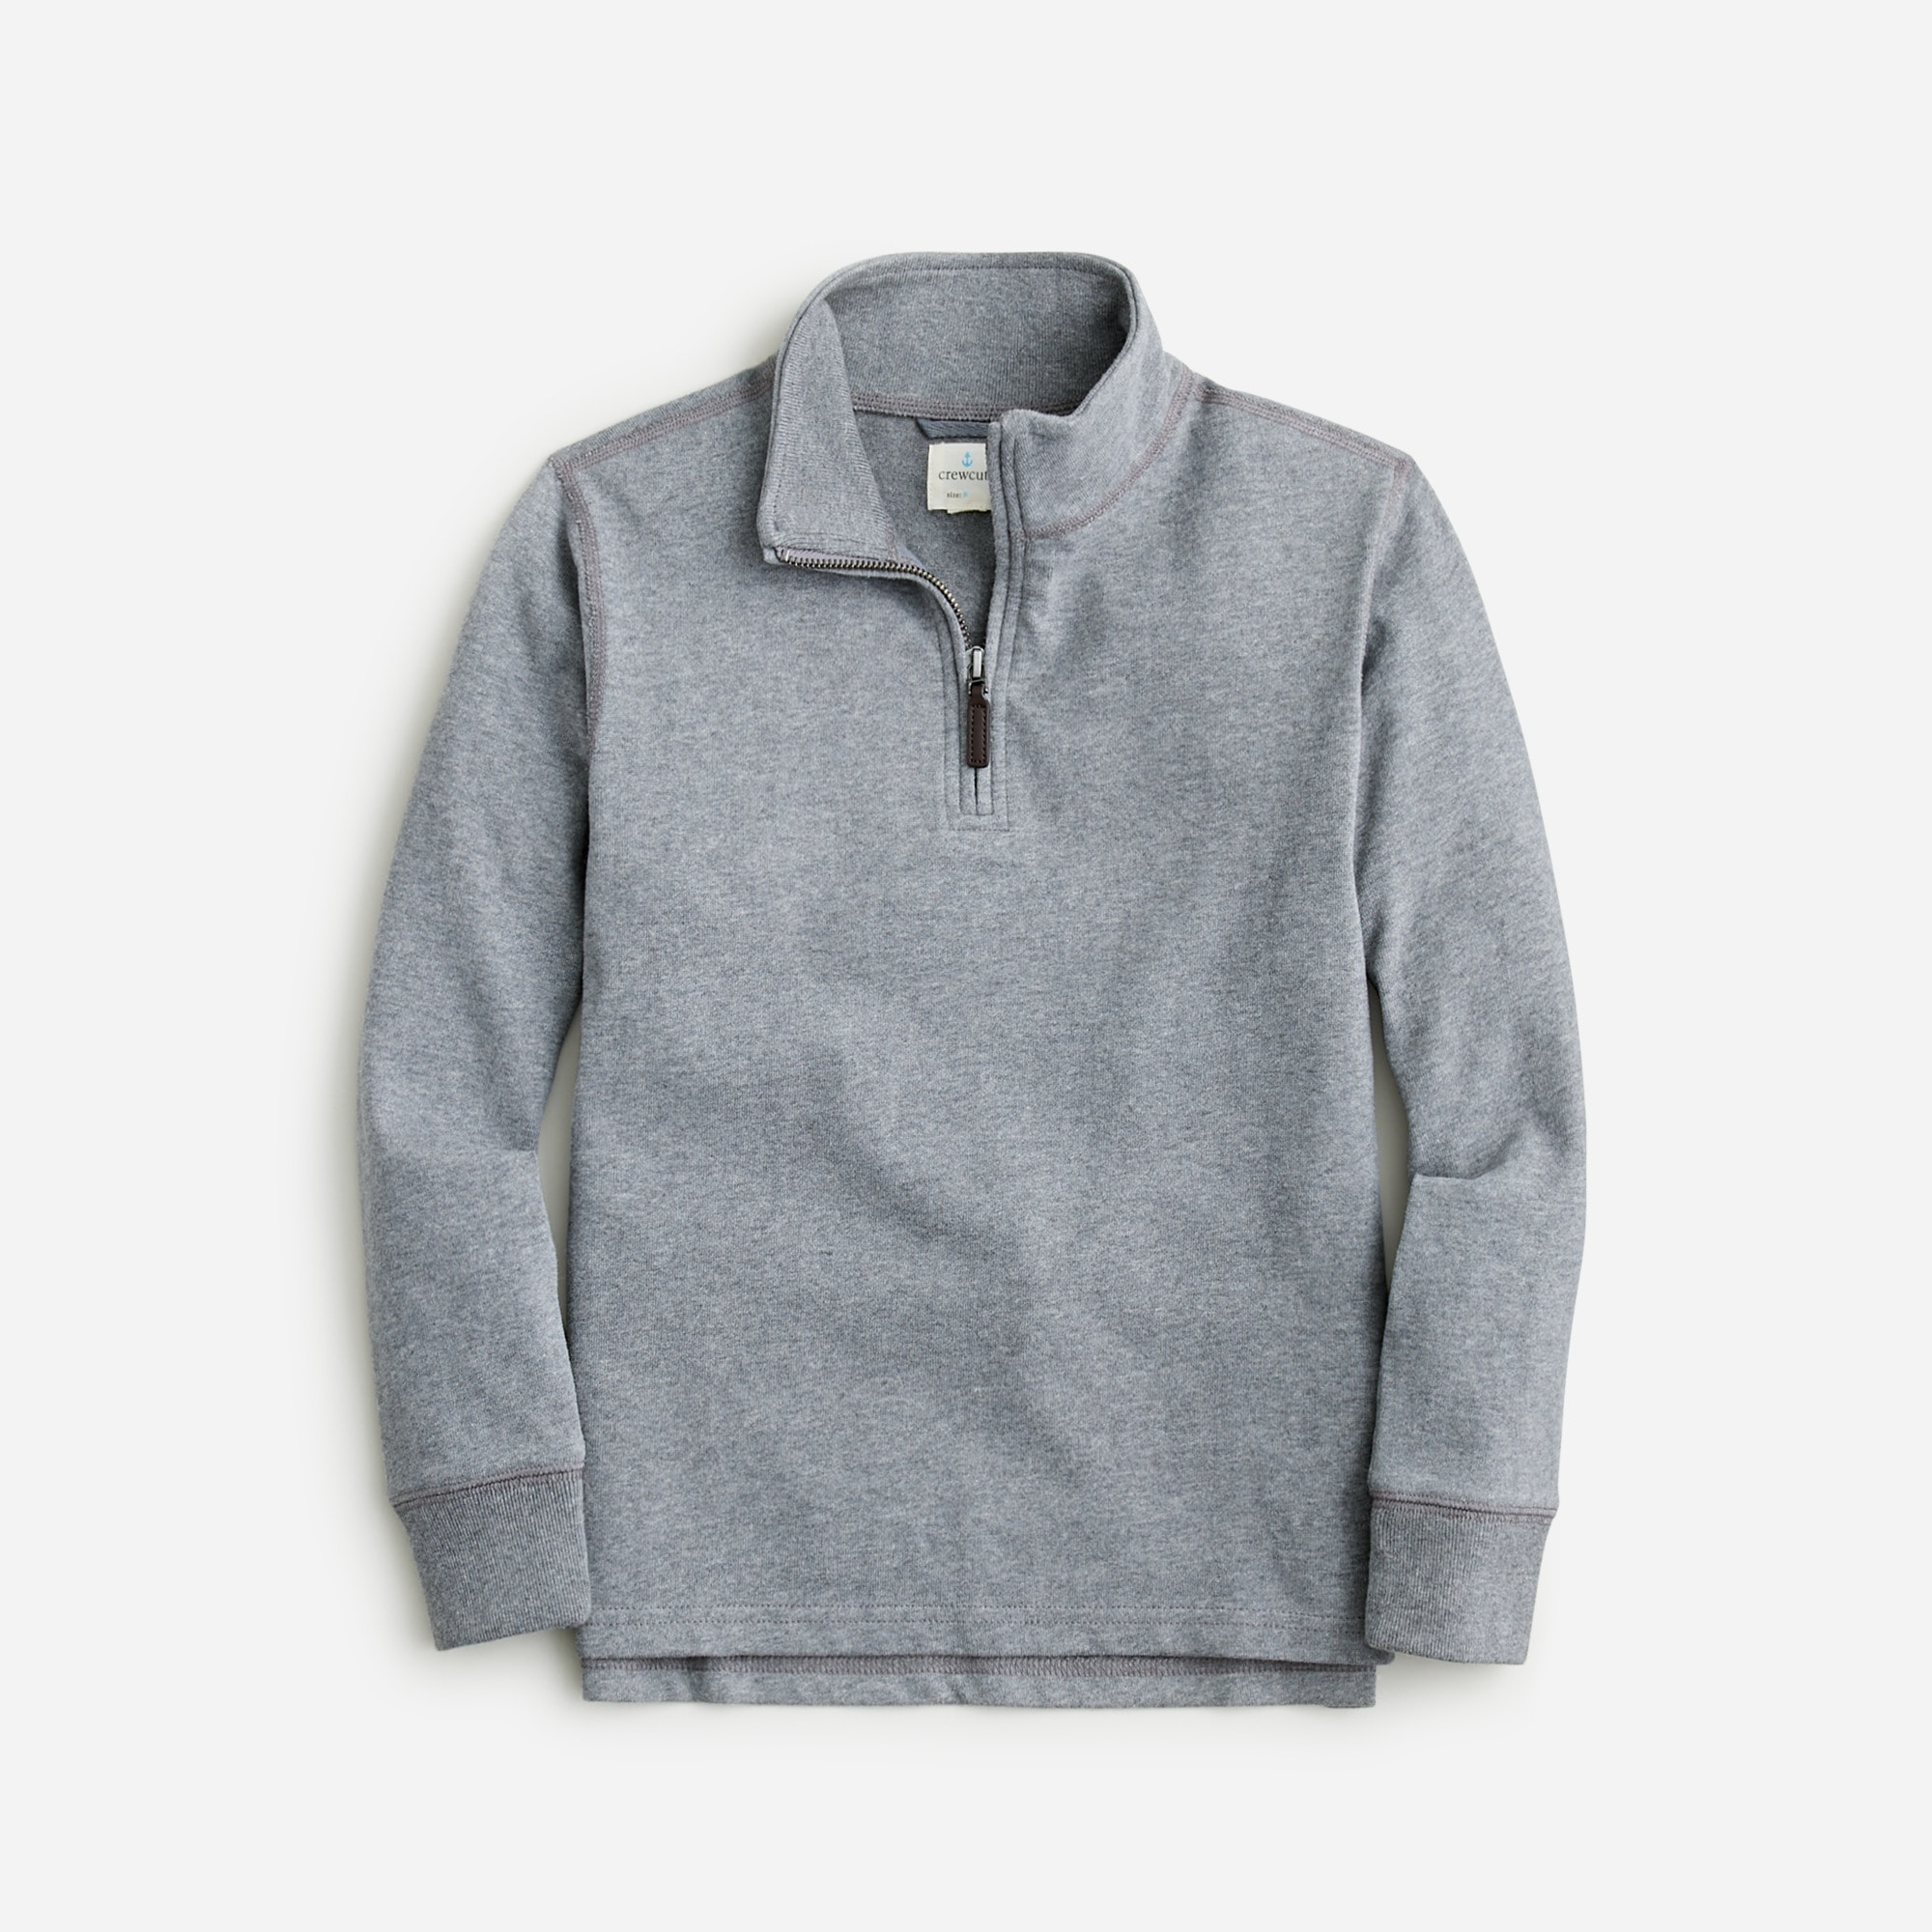  Kids' half-zip cotton pullover